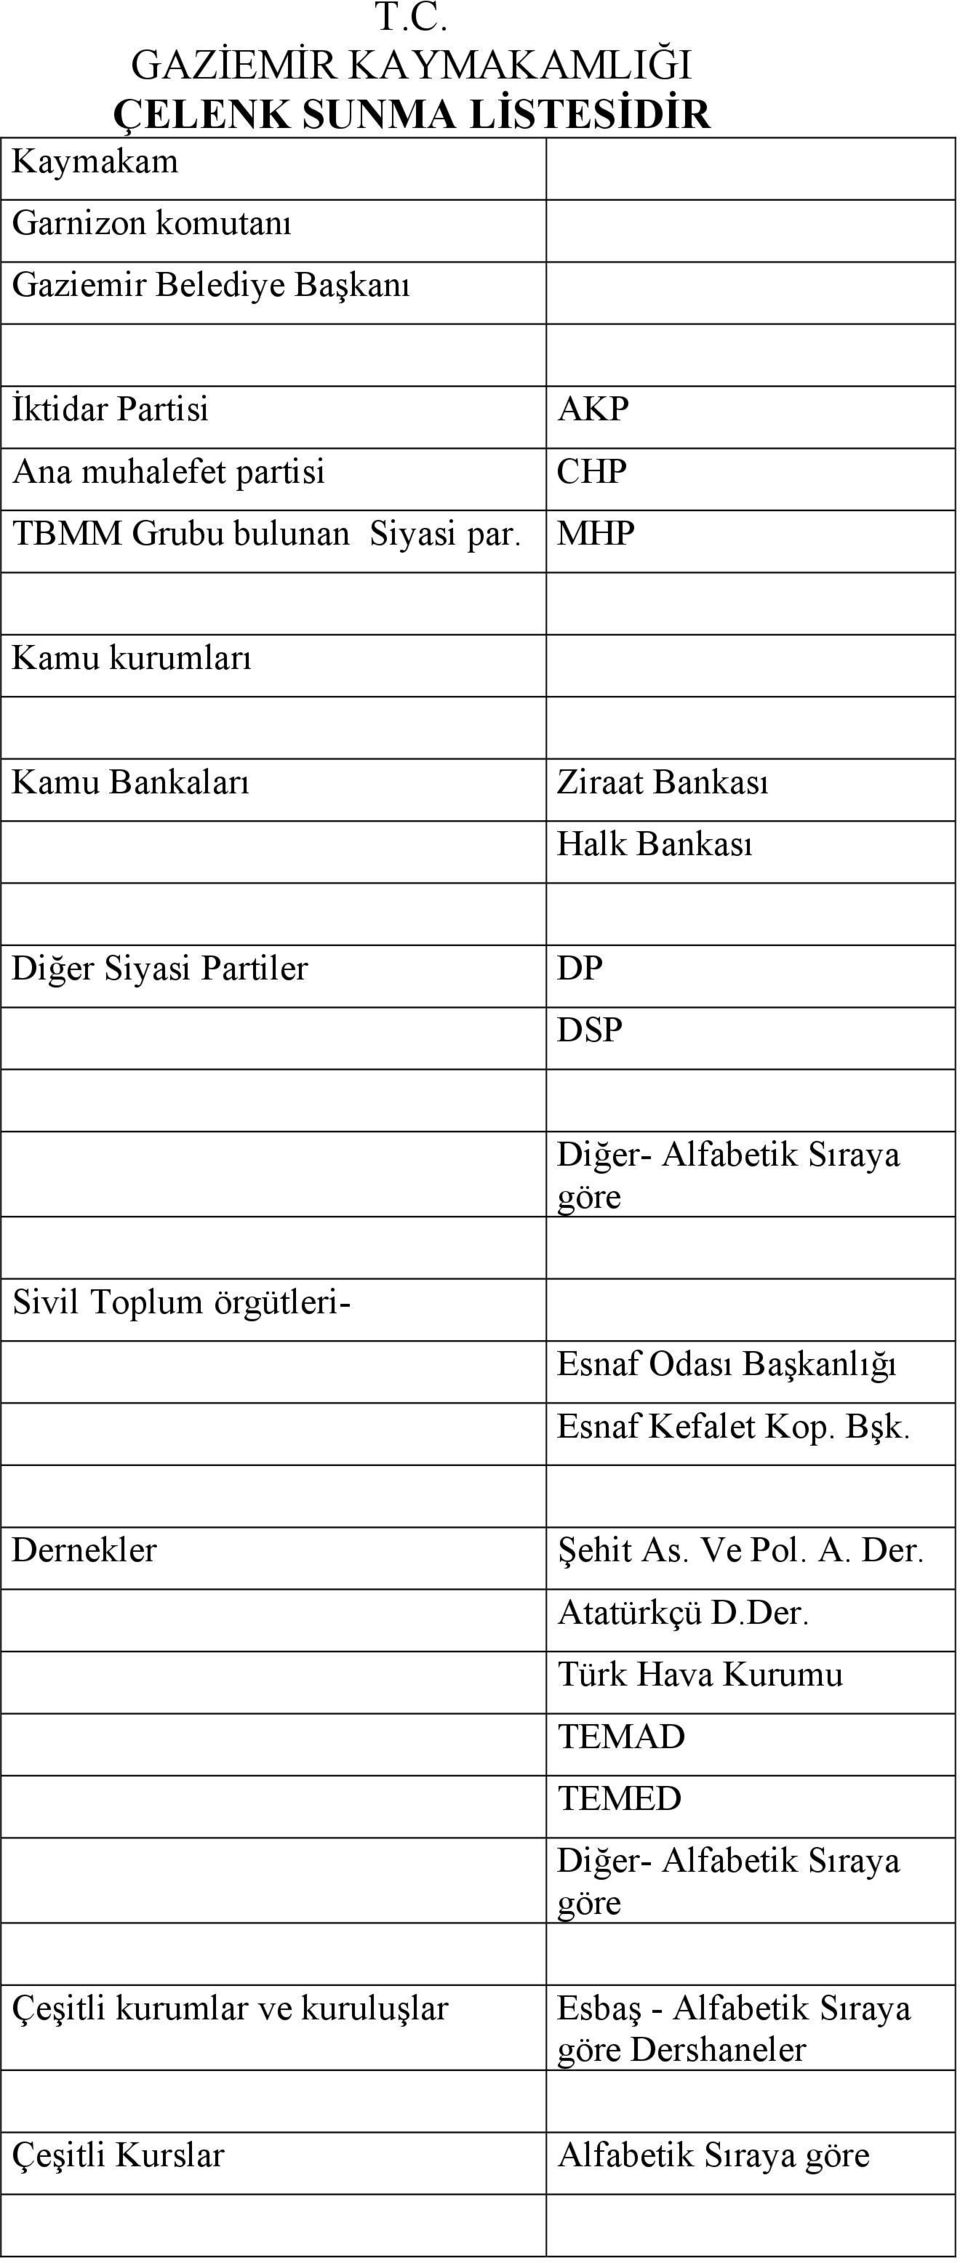 MHP Kamu kurumları Kamu Bankaları Ziraat Bankası Halk Bankası Diğer Siyasi Partiler DP DSP Diğer- Alfabetik Sıraya göre Sivil Toplum örgütleri-